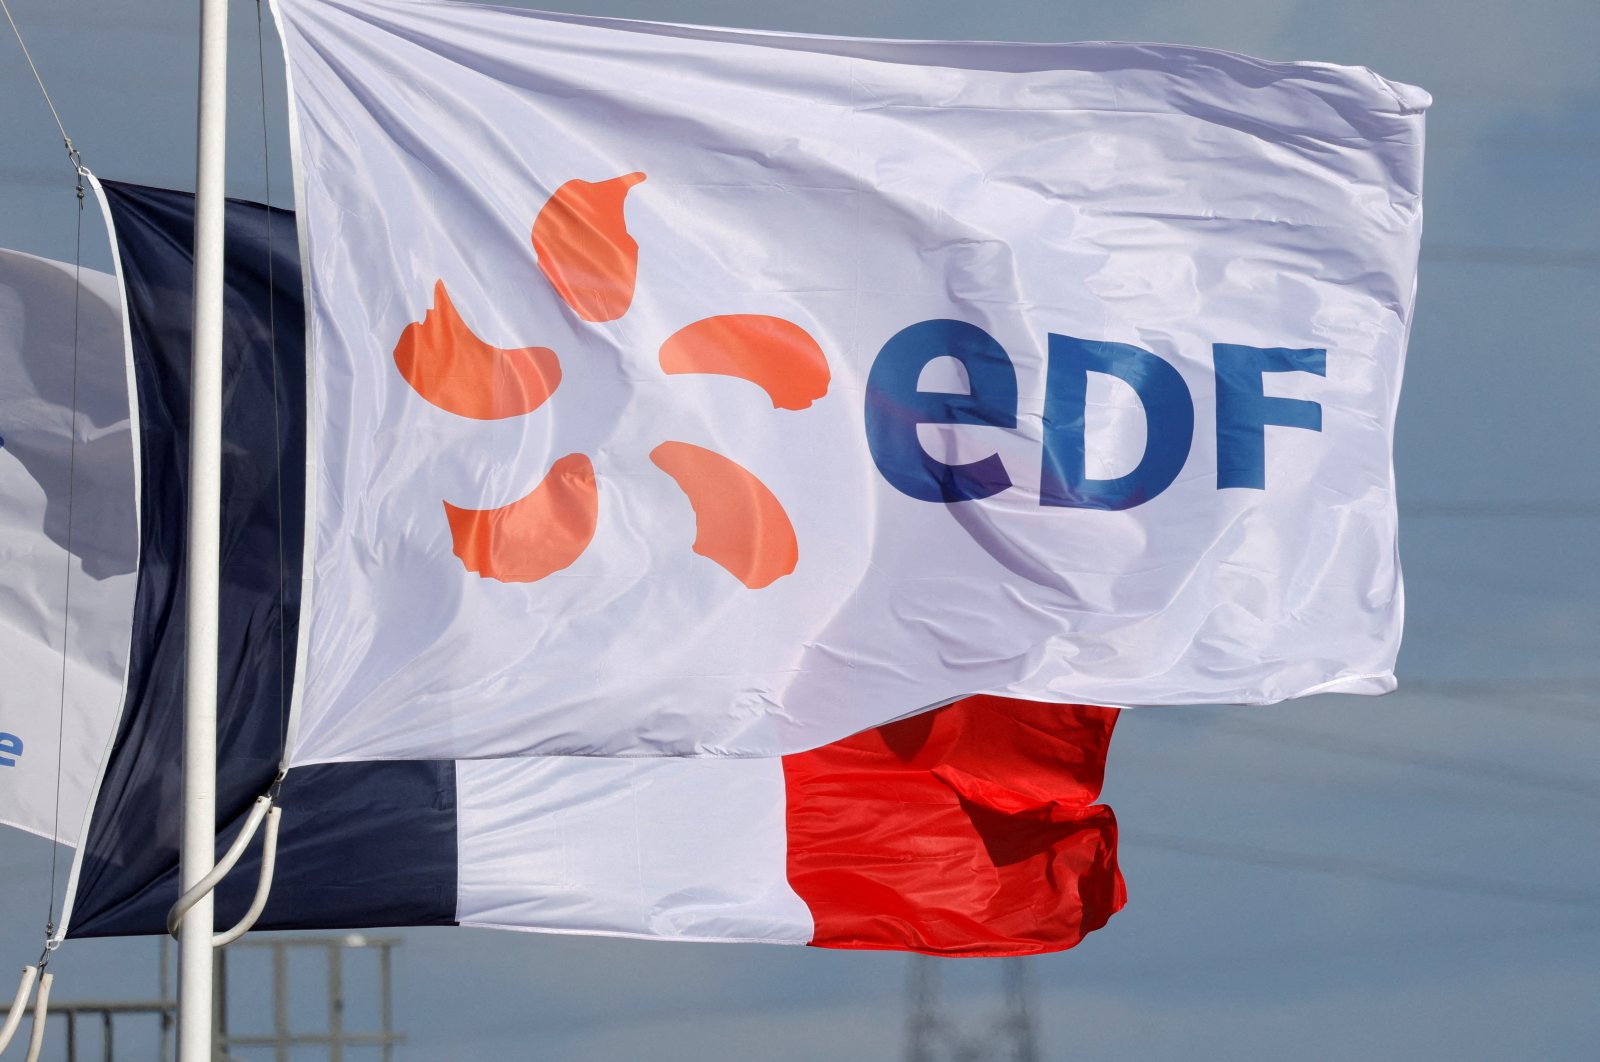 Prancis meluncurkan tawaran hampir $ 10 miliar untuk sepenuhnya menasionalisasi raksasa listrik EDF